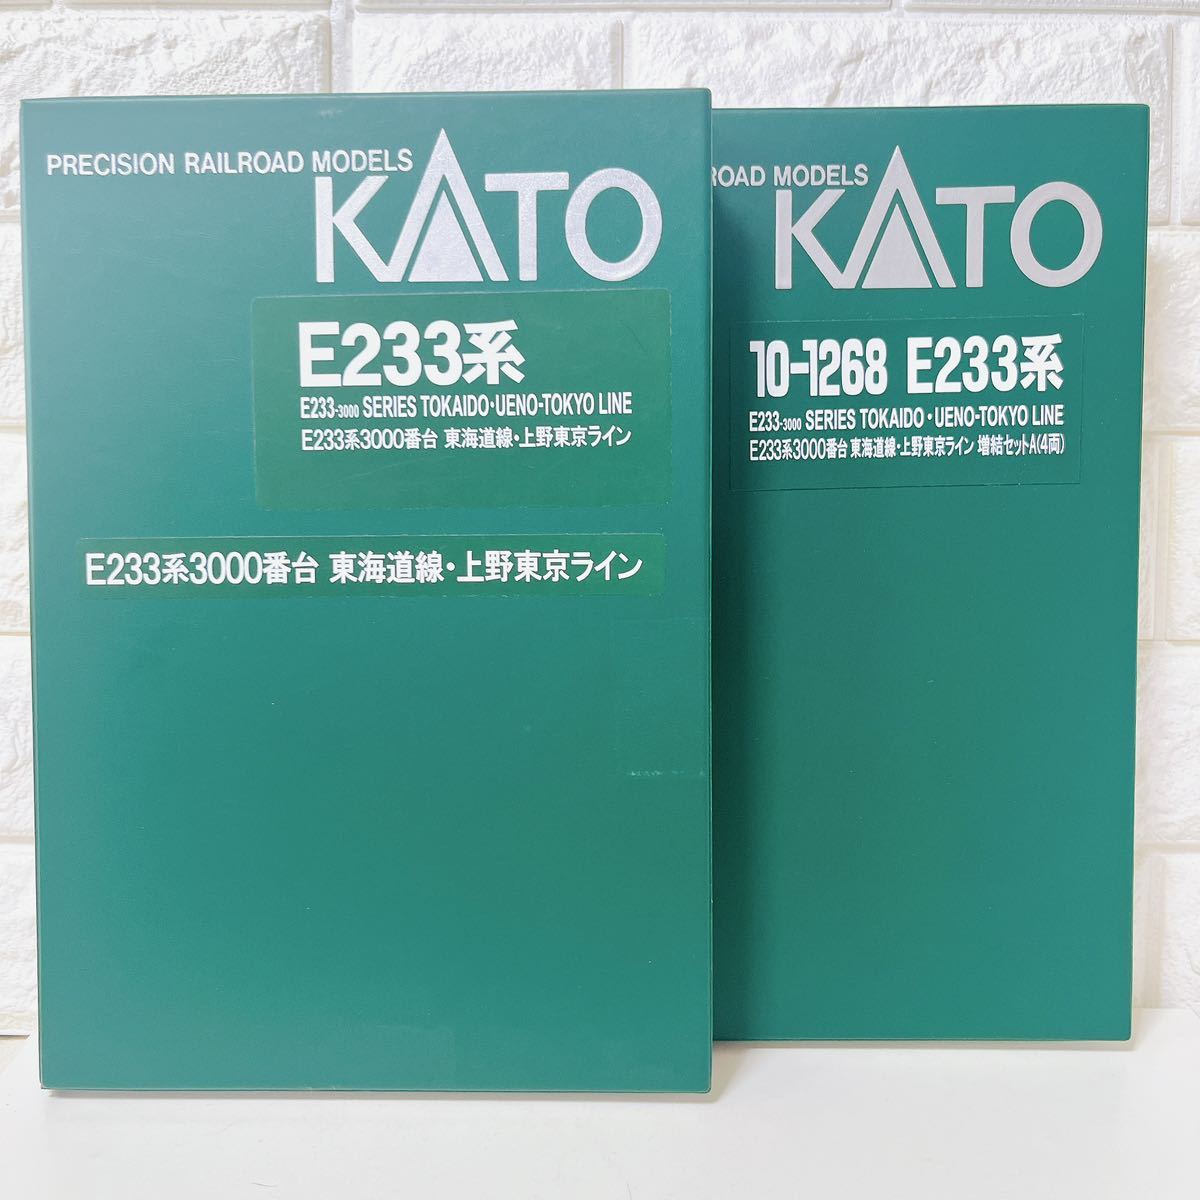 KATO カトー 10-1267 10-1268 E233系 3000番台 東海道線 上野東京